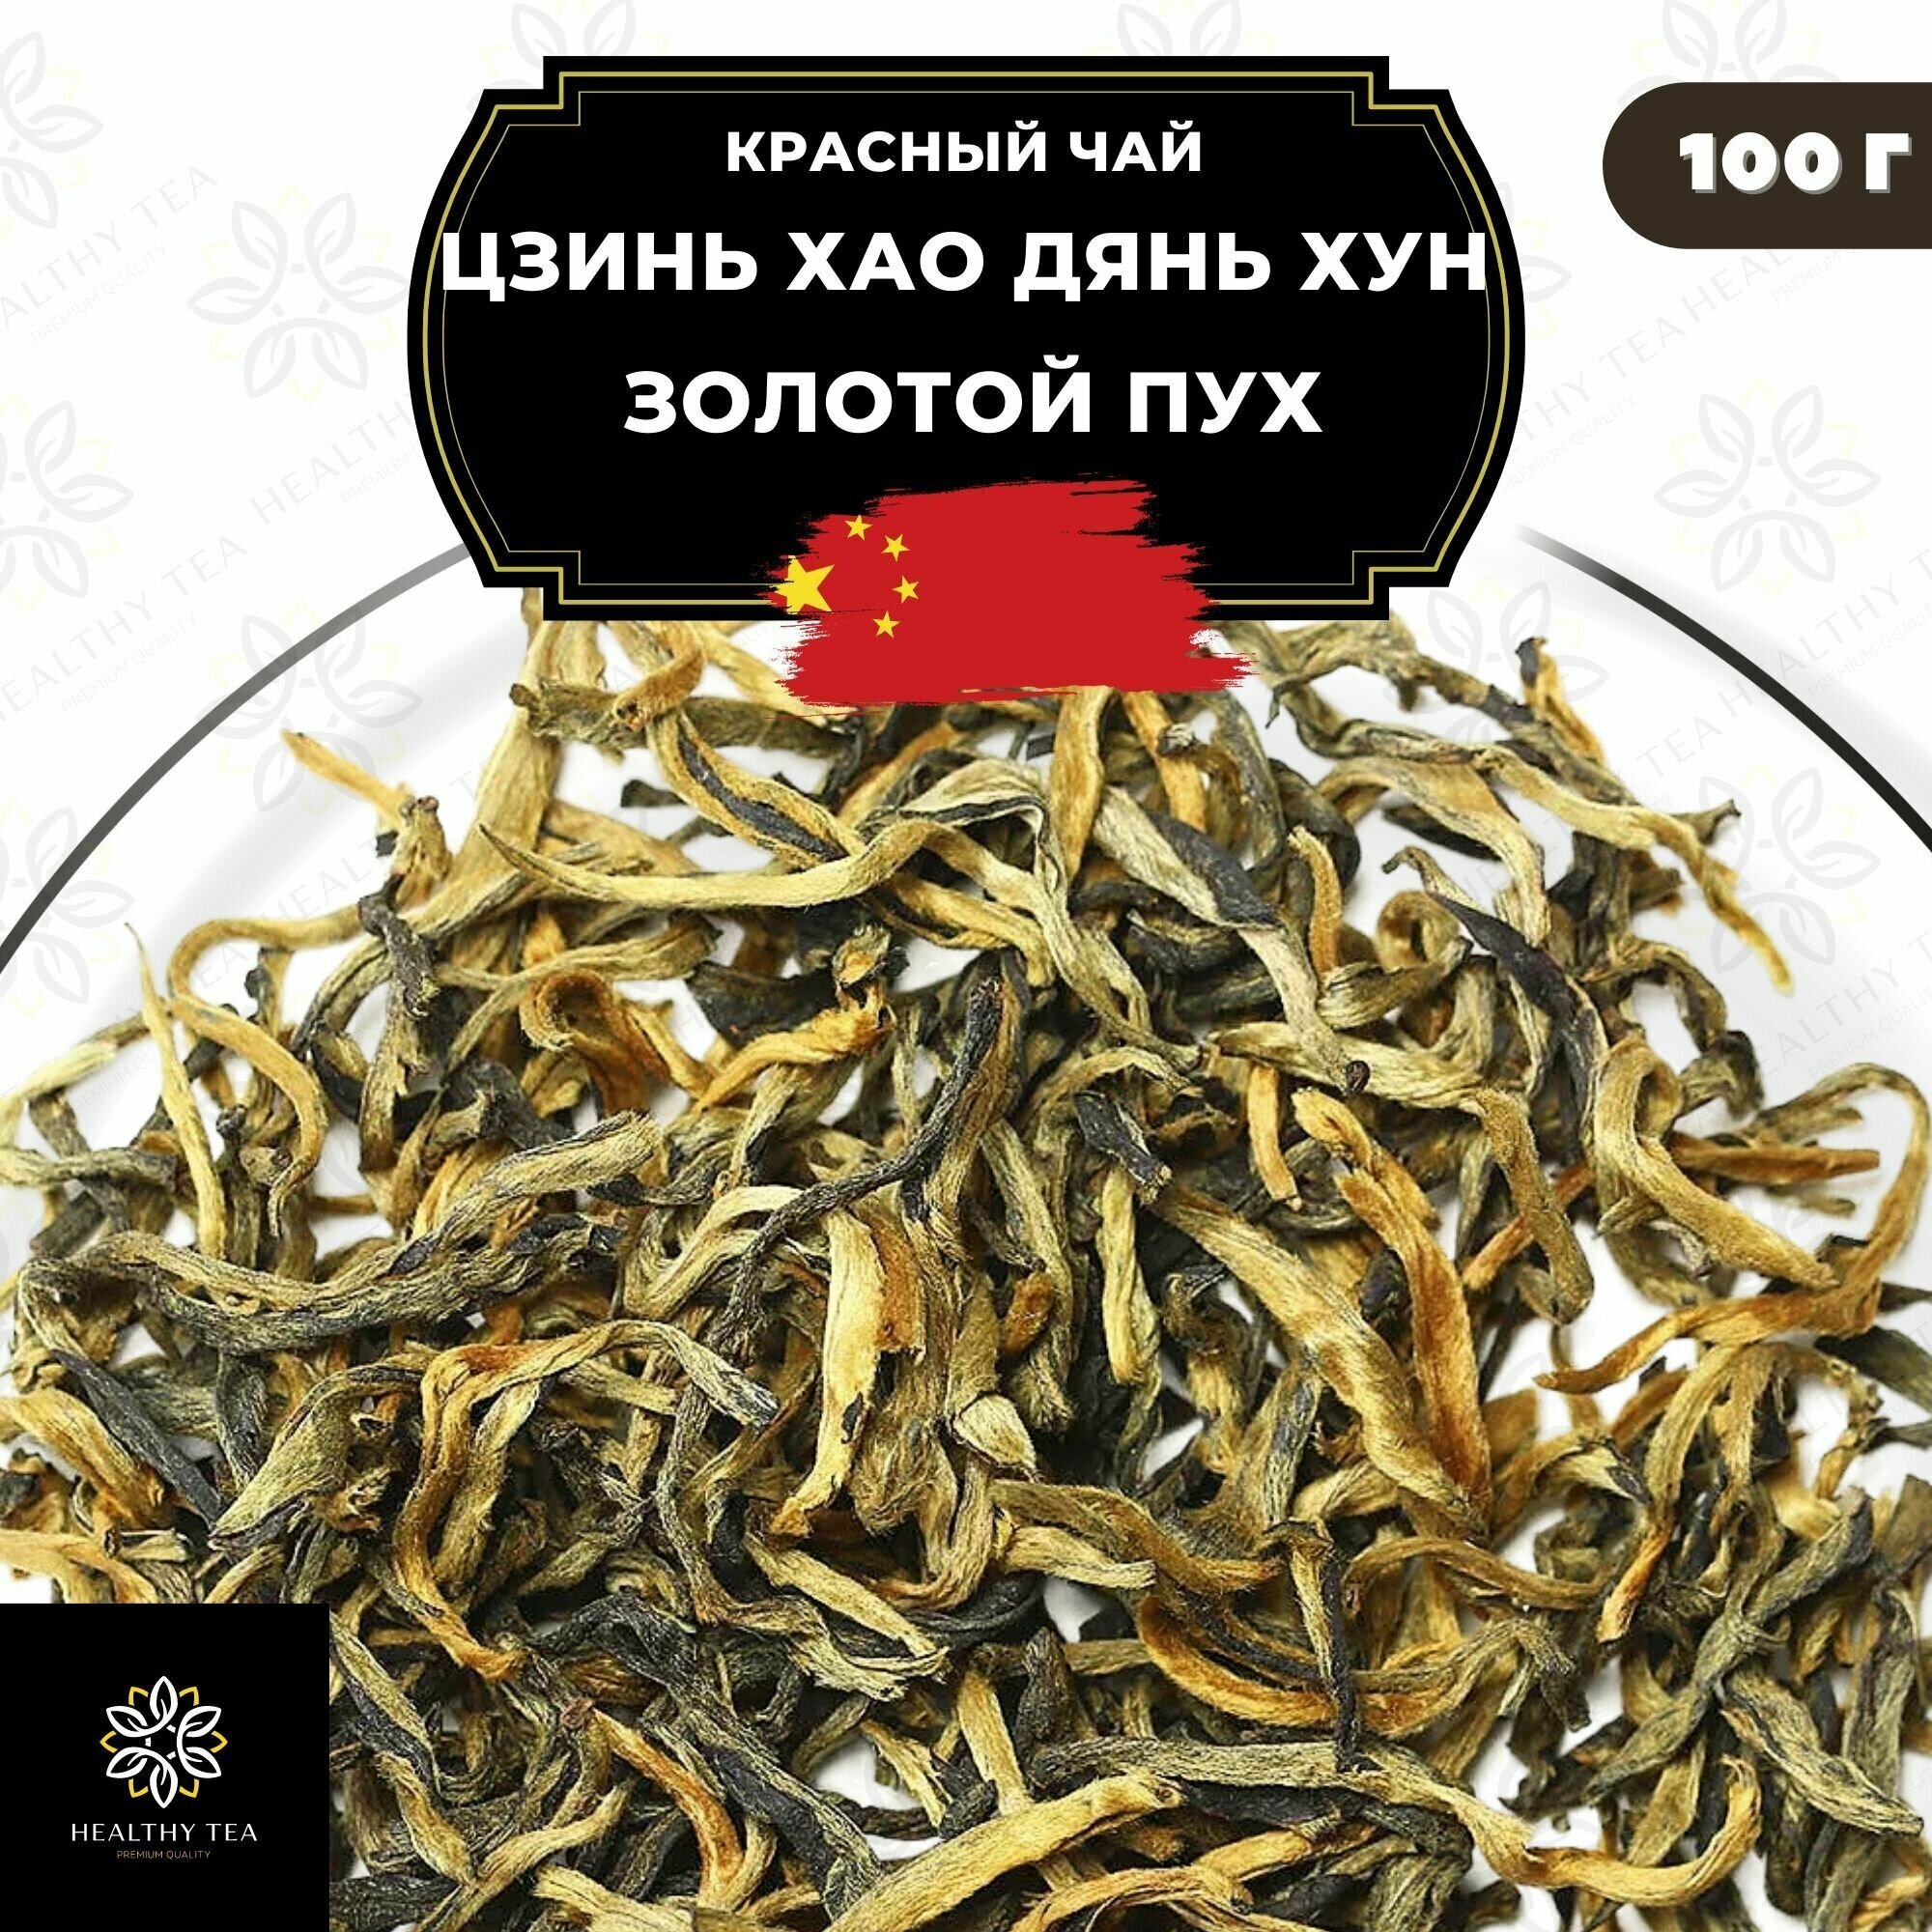 Китайский красный чай Цзинь Хао Дянь Хун (Золотой пух) Полезный чай / HEALTHY TEA, 100 г